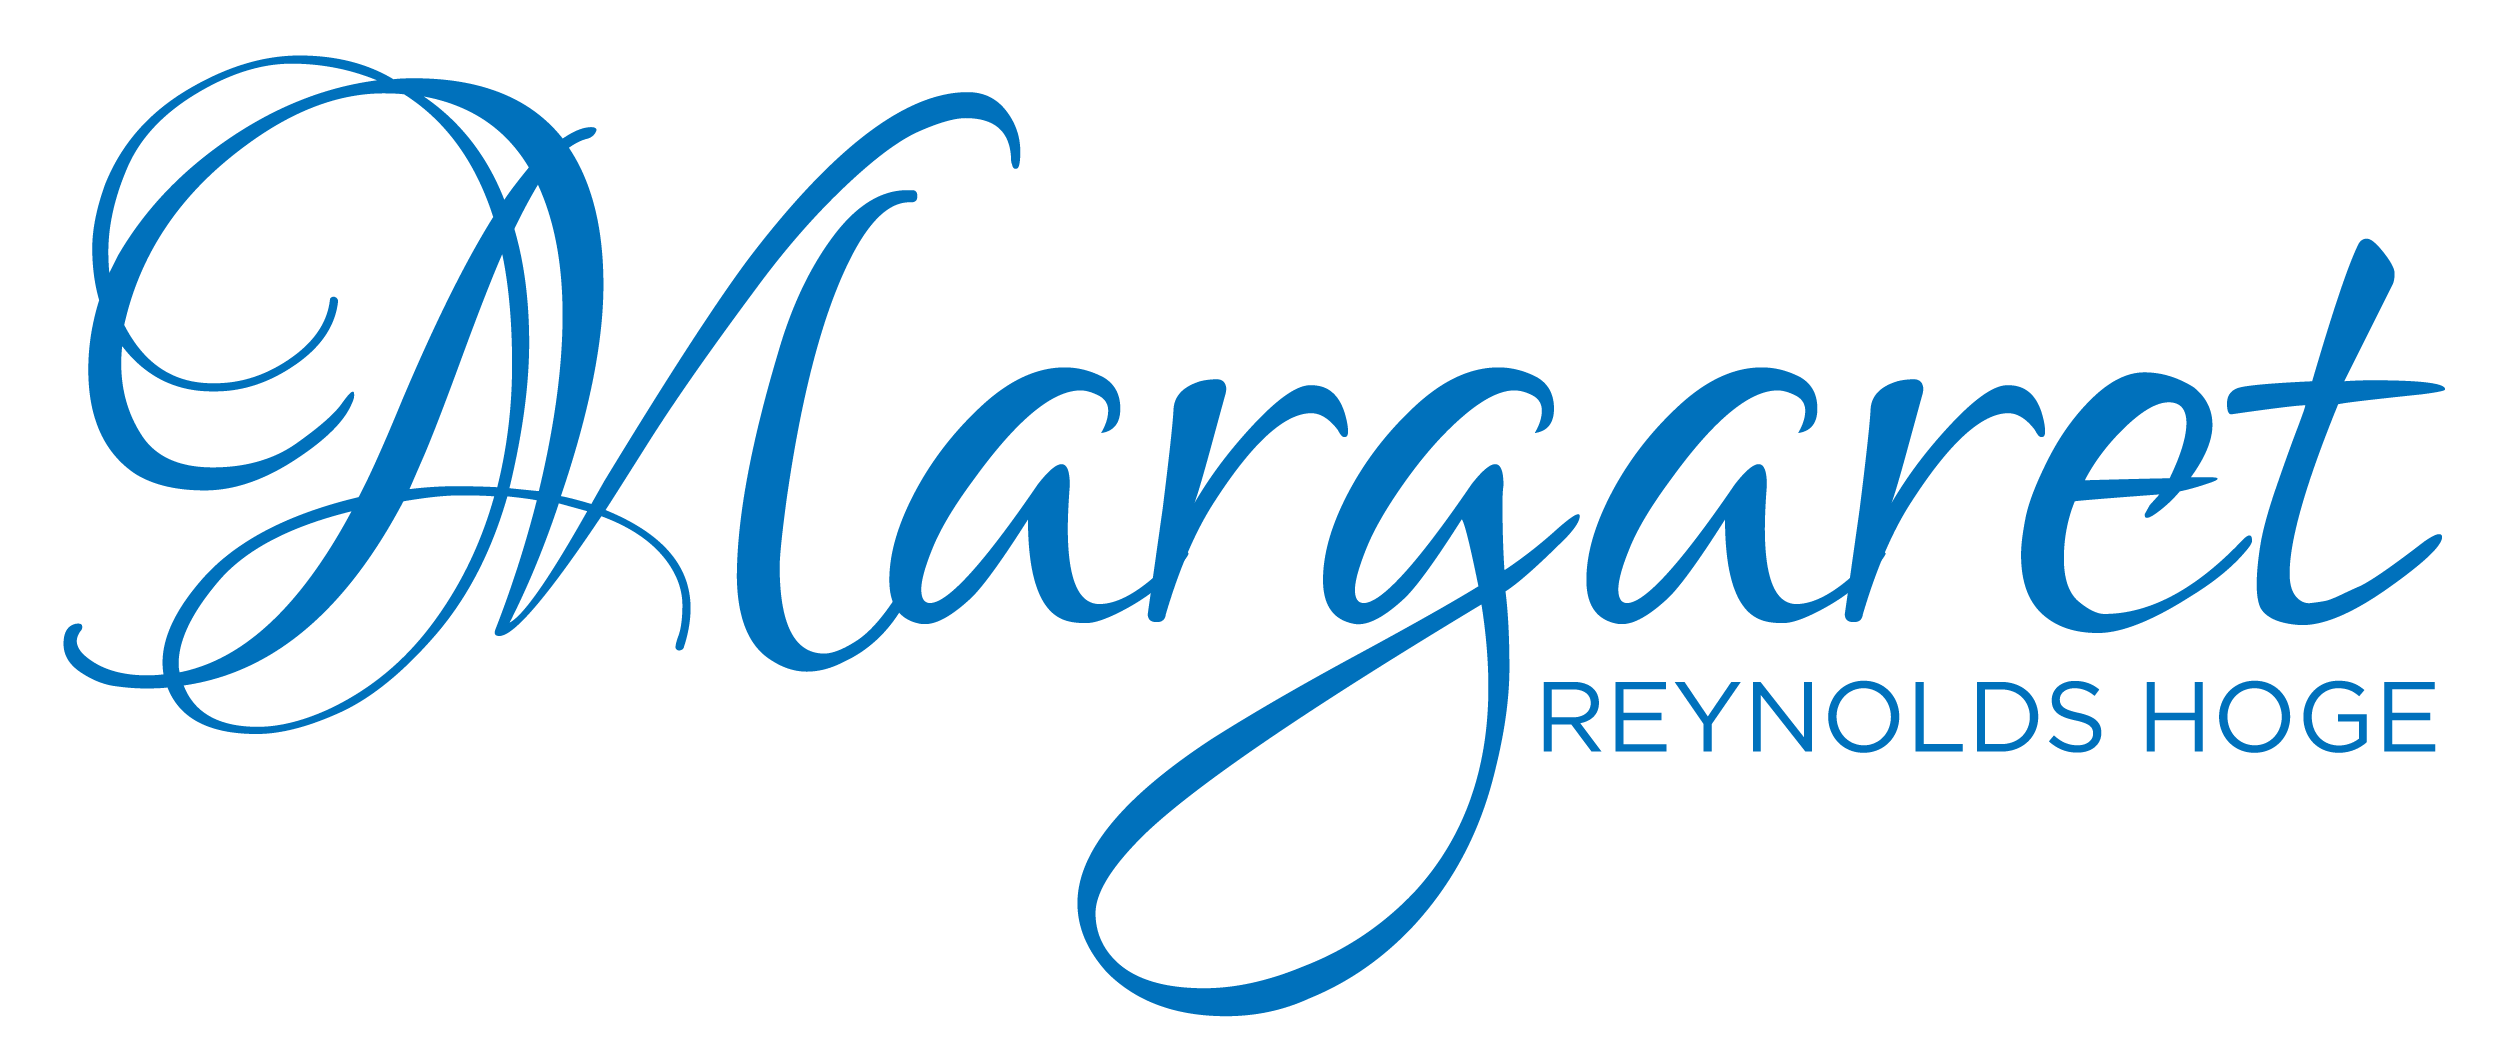 Margaret Reynolds Hoge Logo